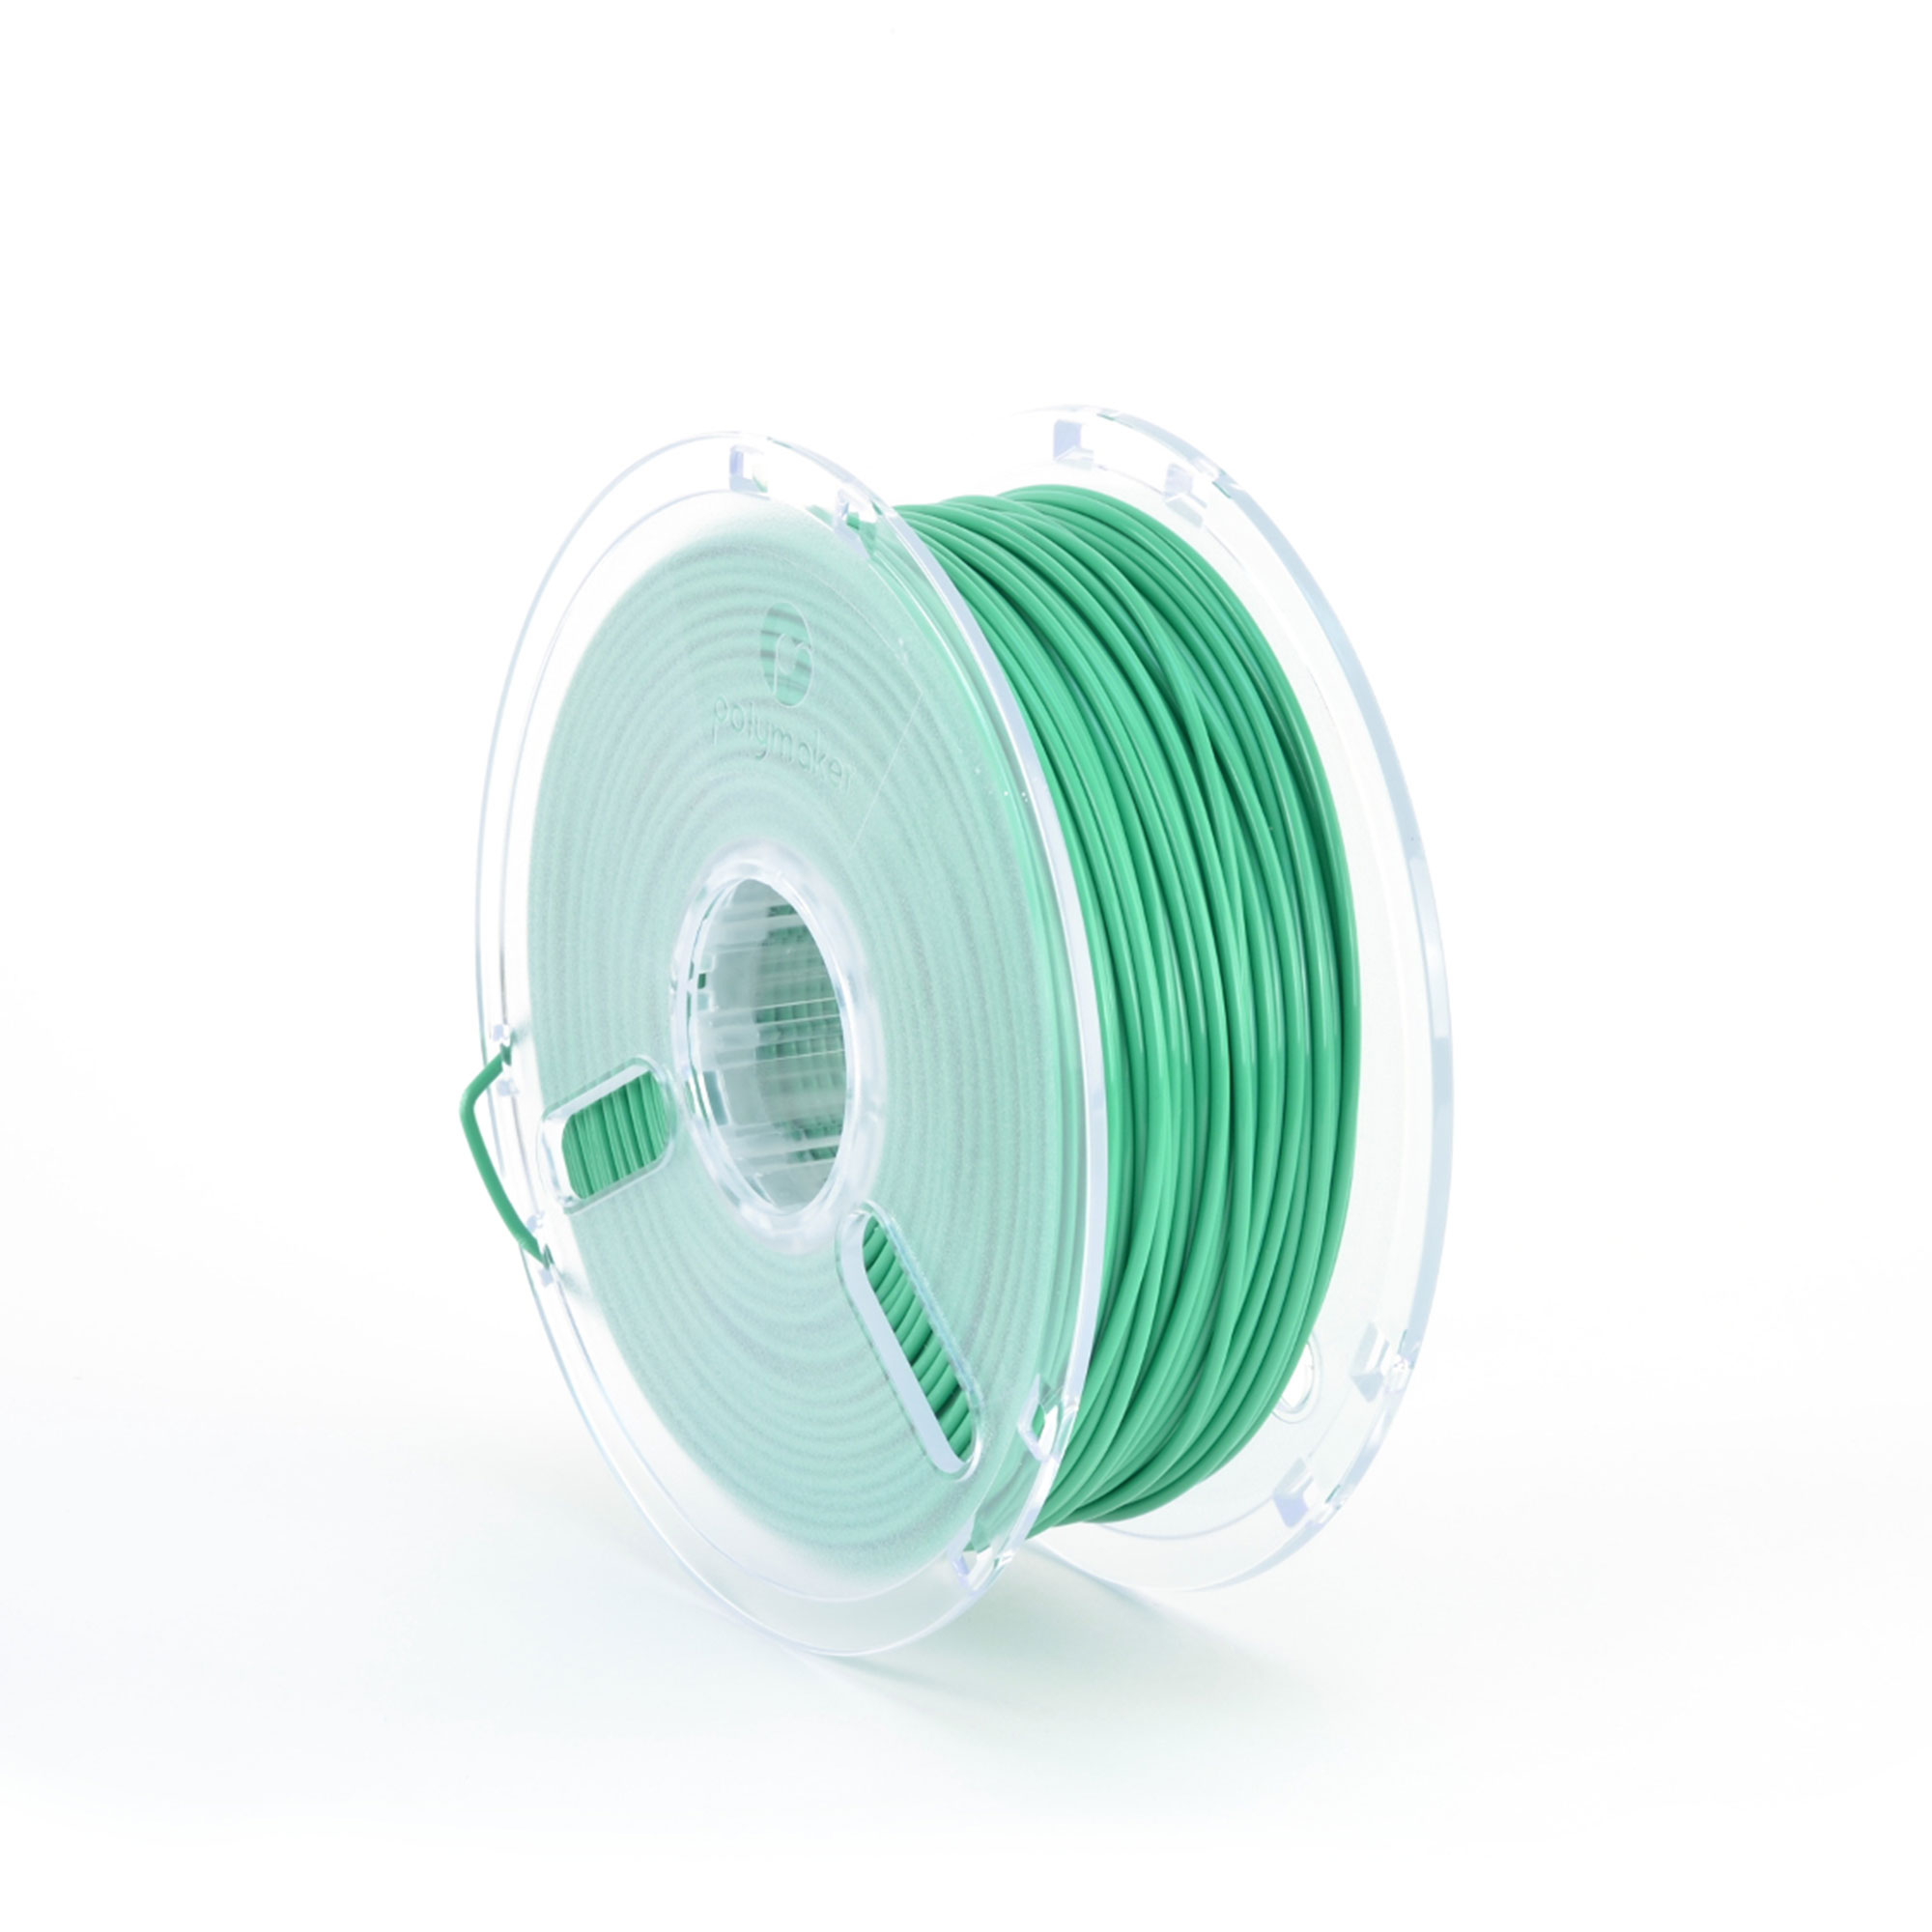 3d Printer Filament True Green 2.85mm 1kg Reel